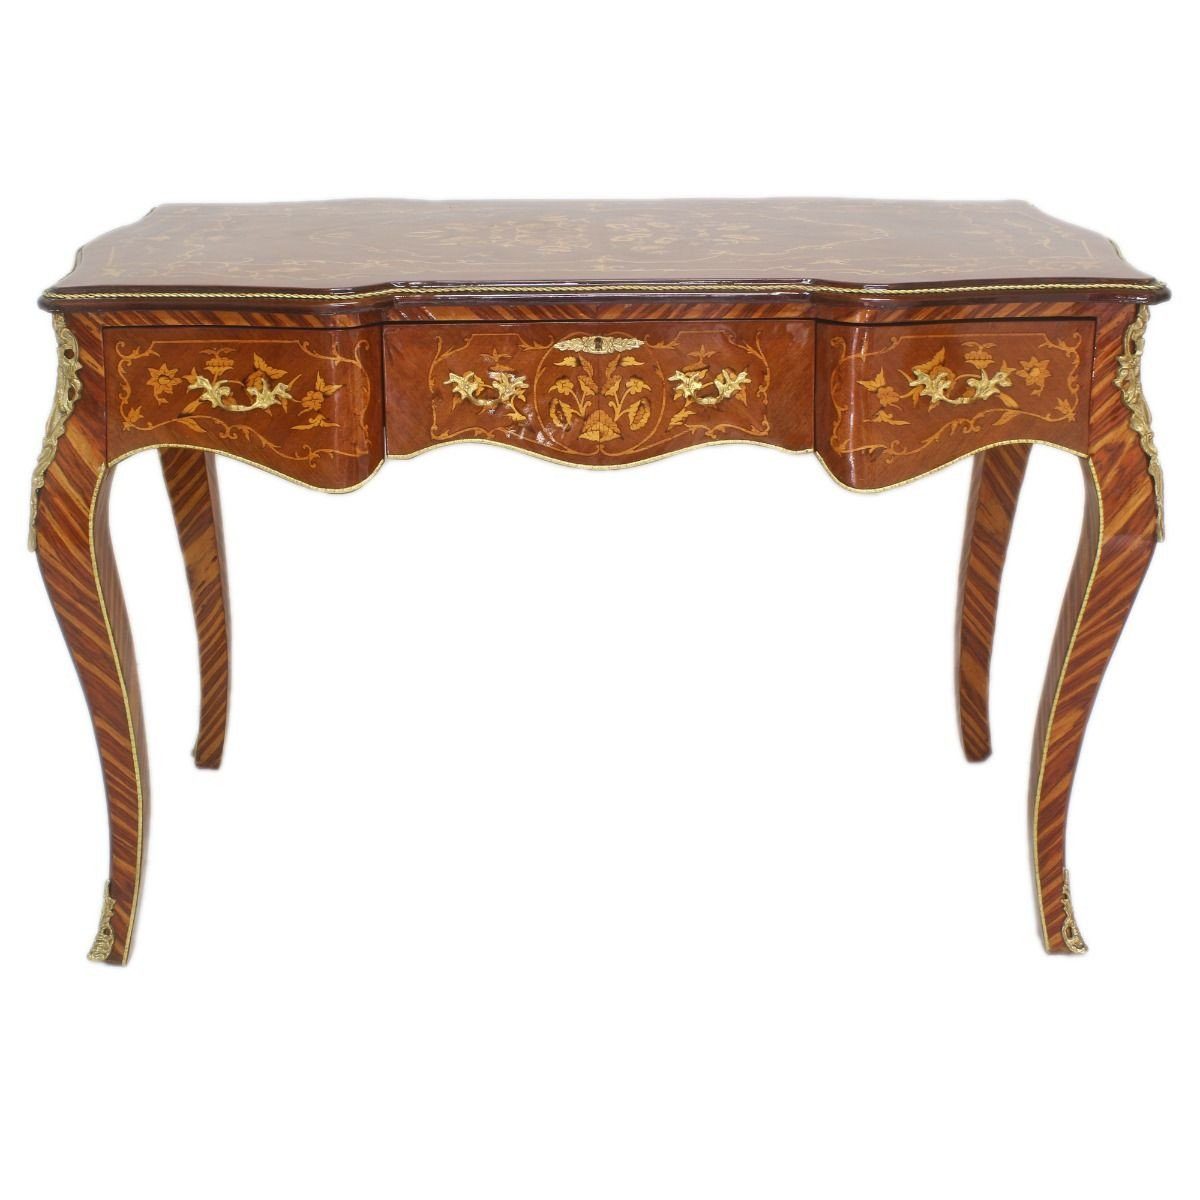 Casa Padrino Schreibtisch Barock Sekretär Mahagoni Intarsien / Gold 120 cm - Handgefertigter Antik Stil Scheibtisch - Barock Büro Möbel